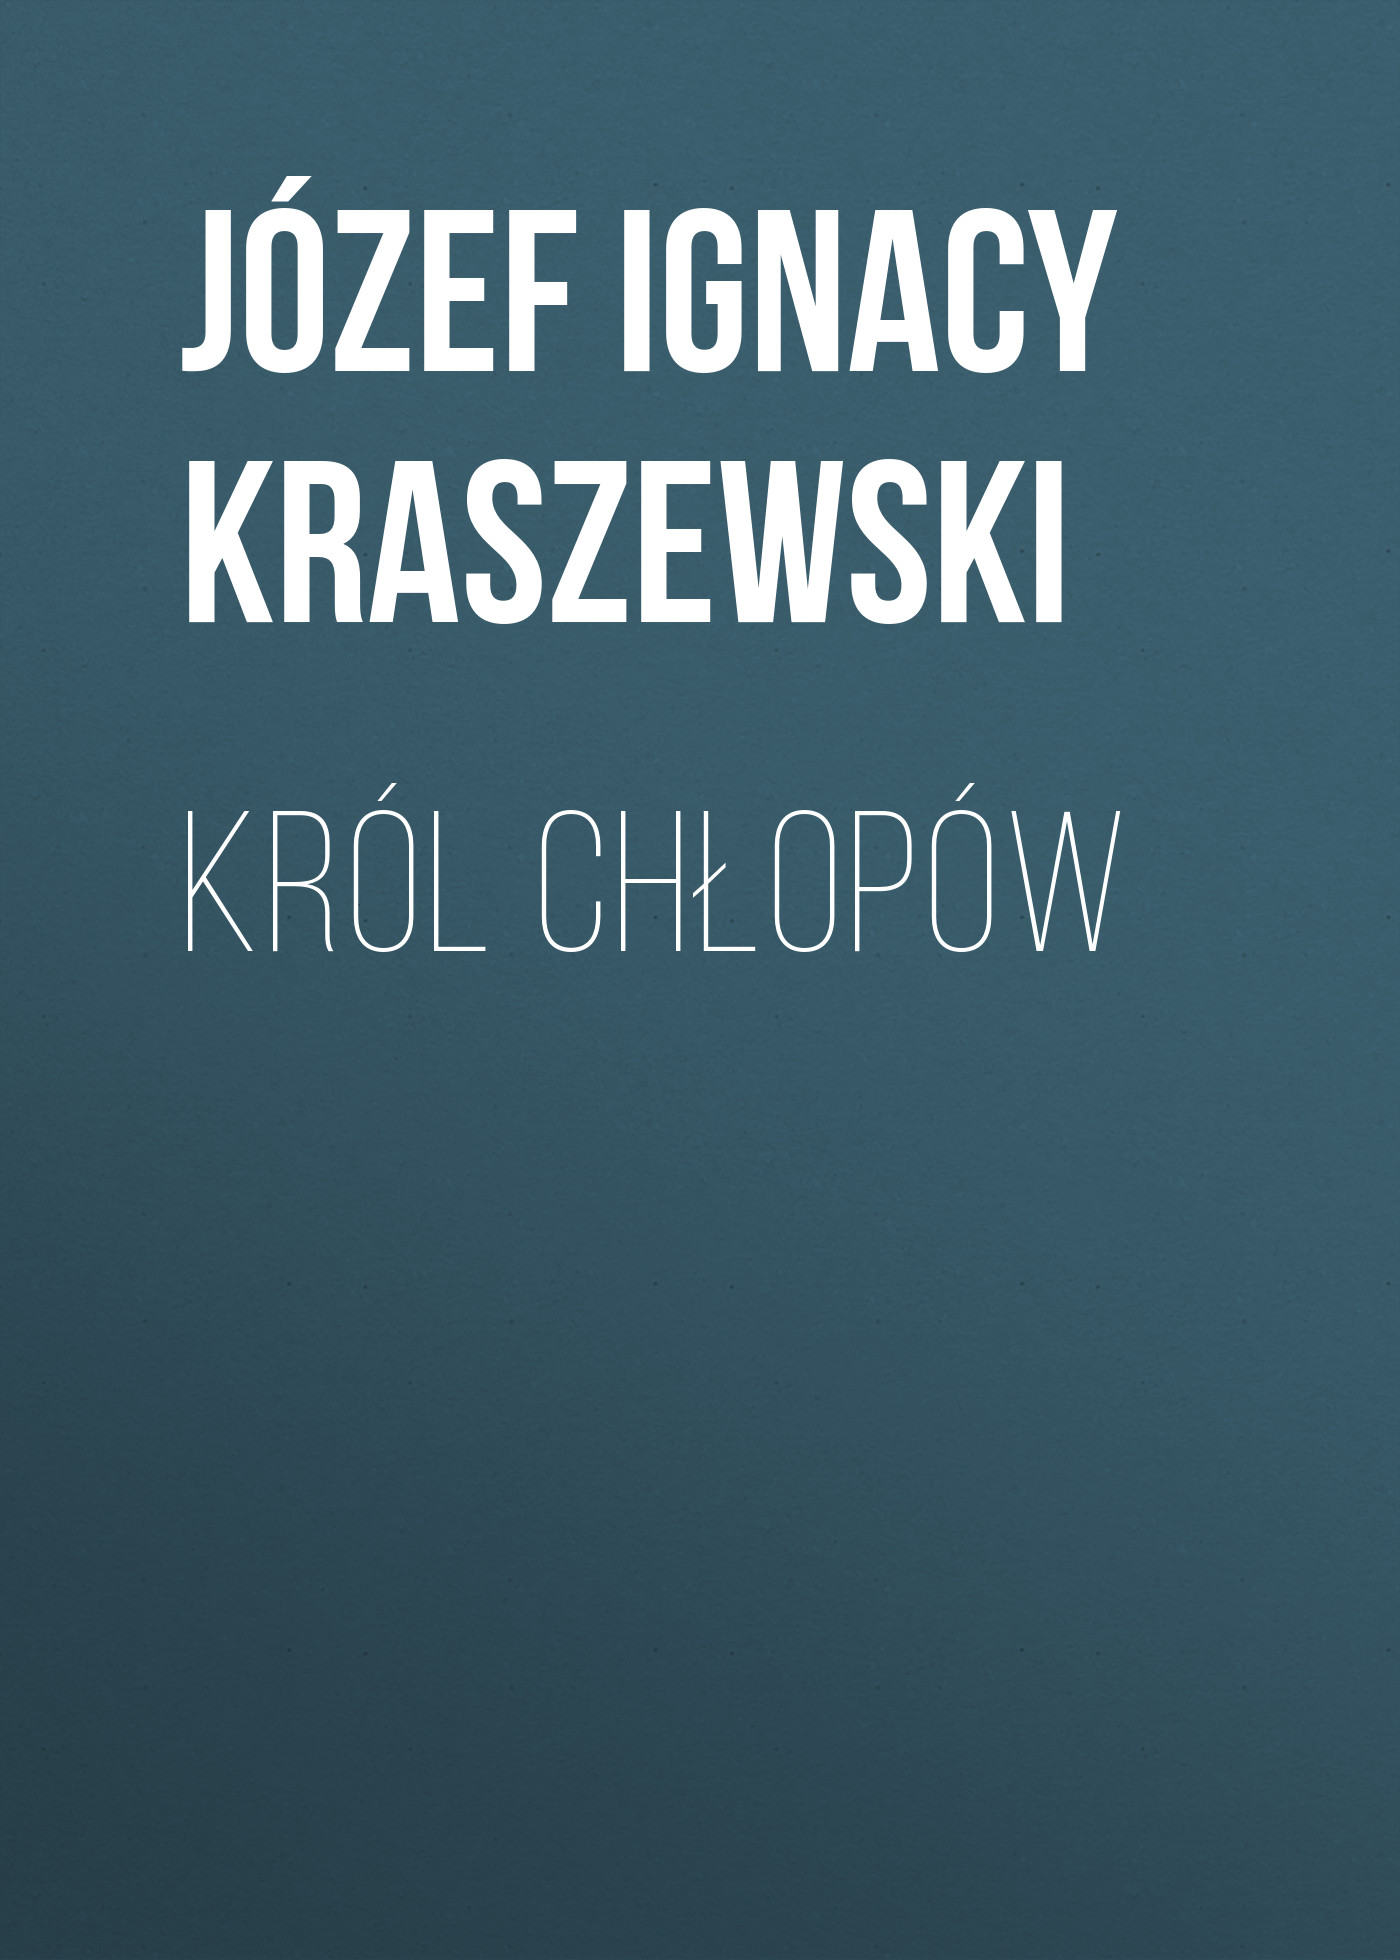 Скачать Król chłopów - Józef Ignacy Kraszewski